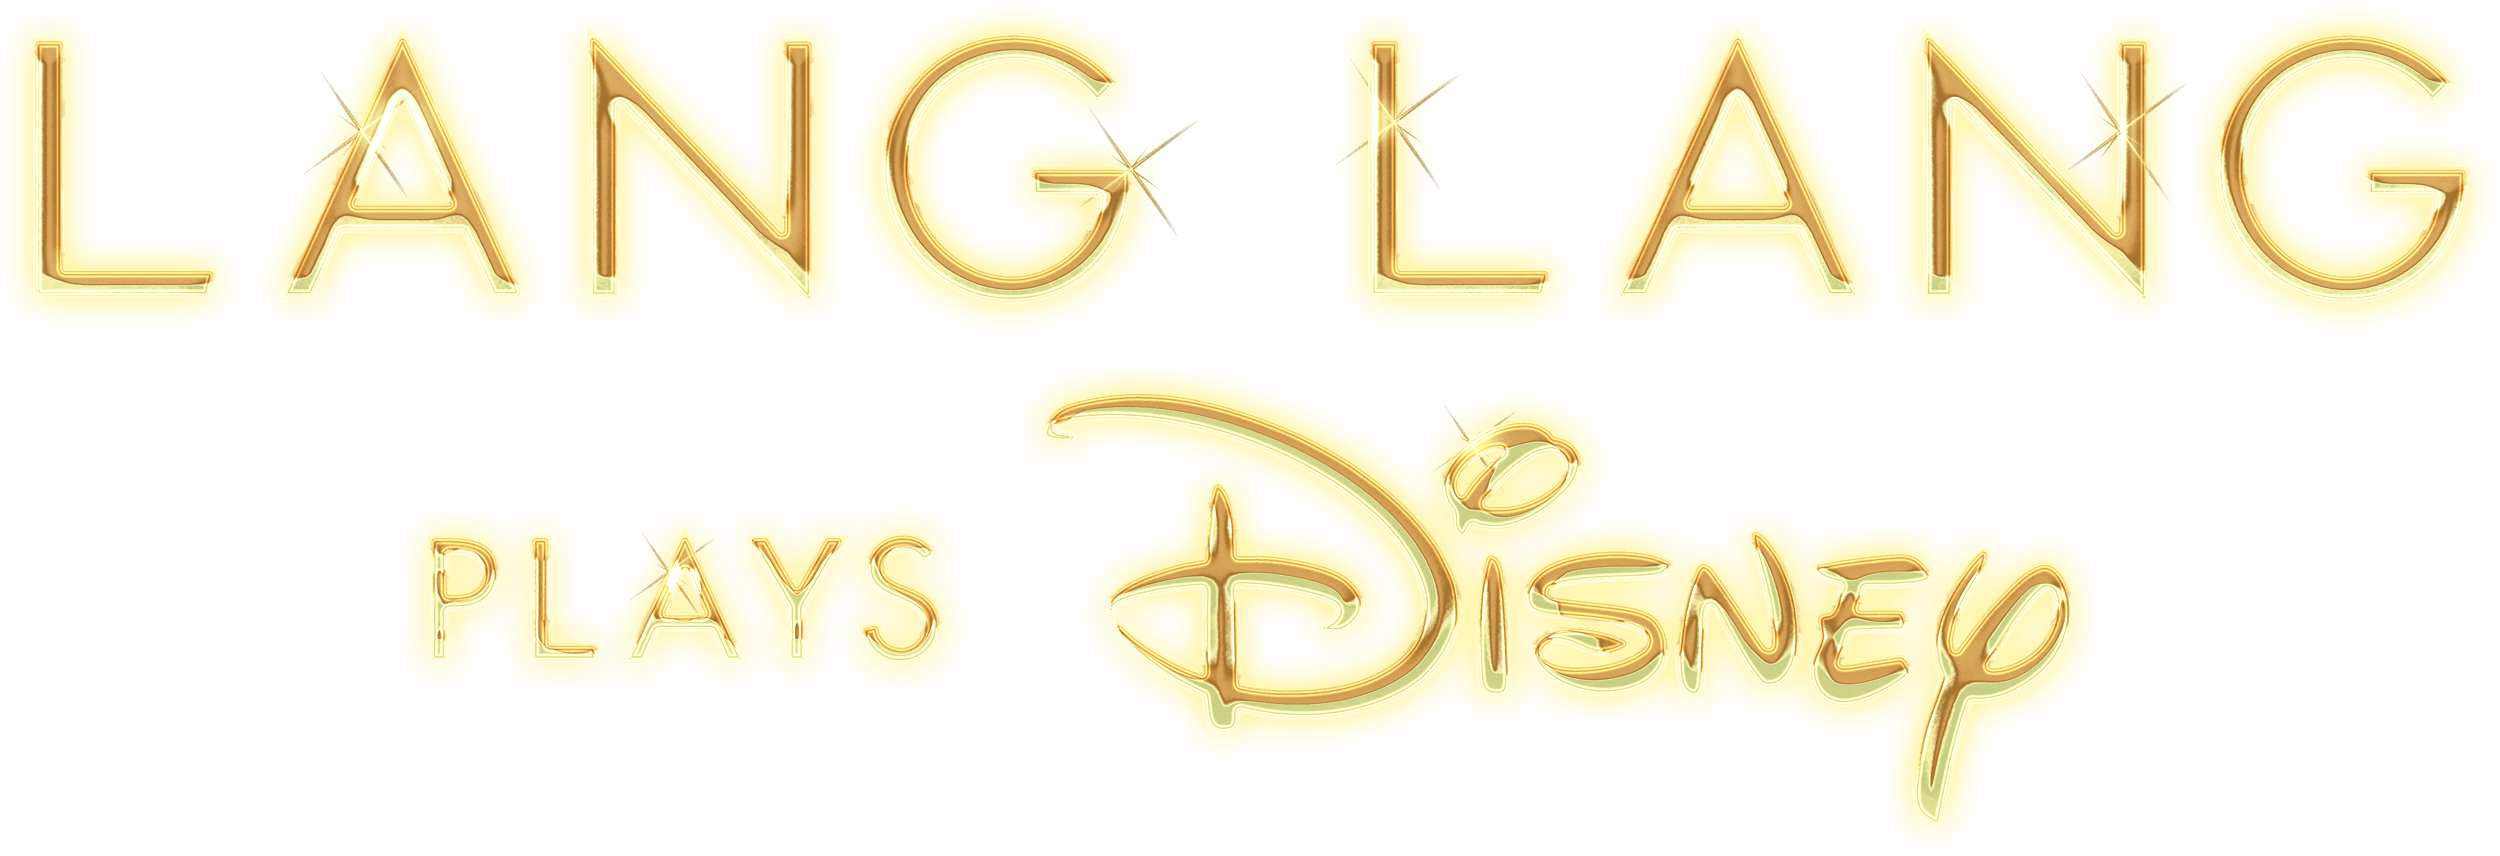 Lang Lang Plays Disney logo